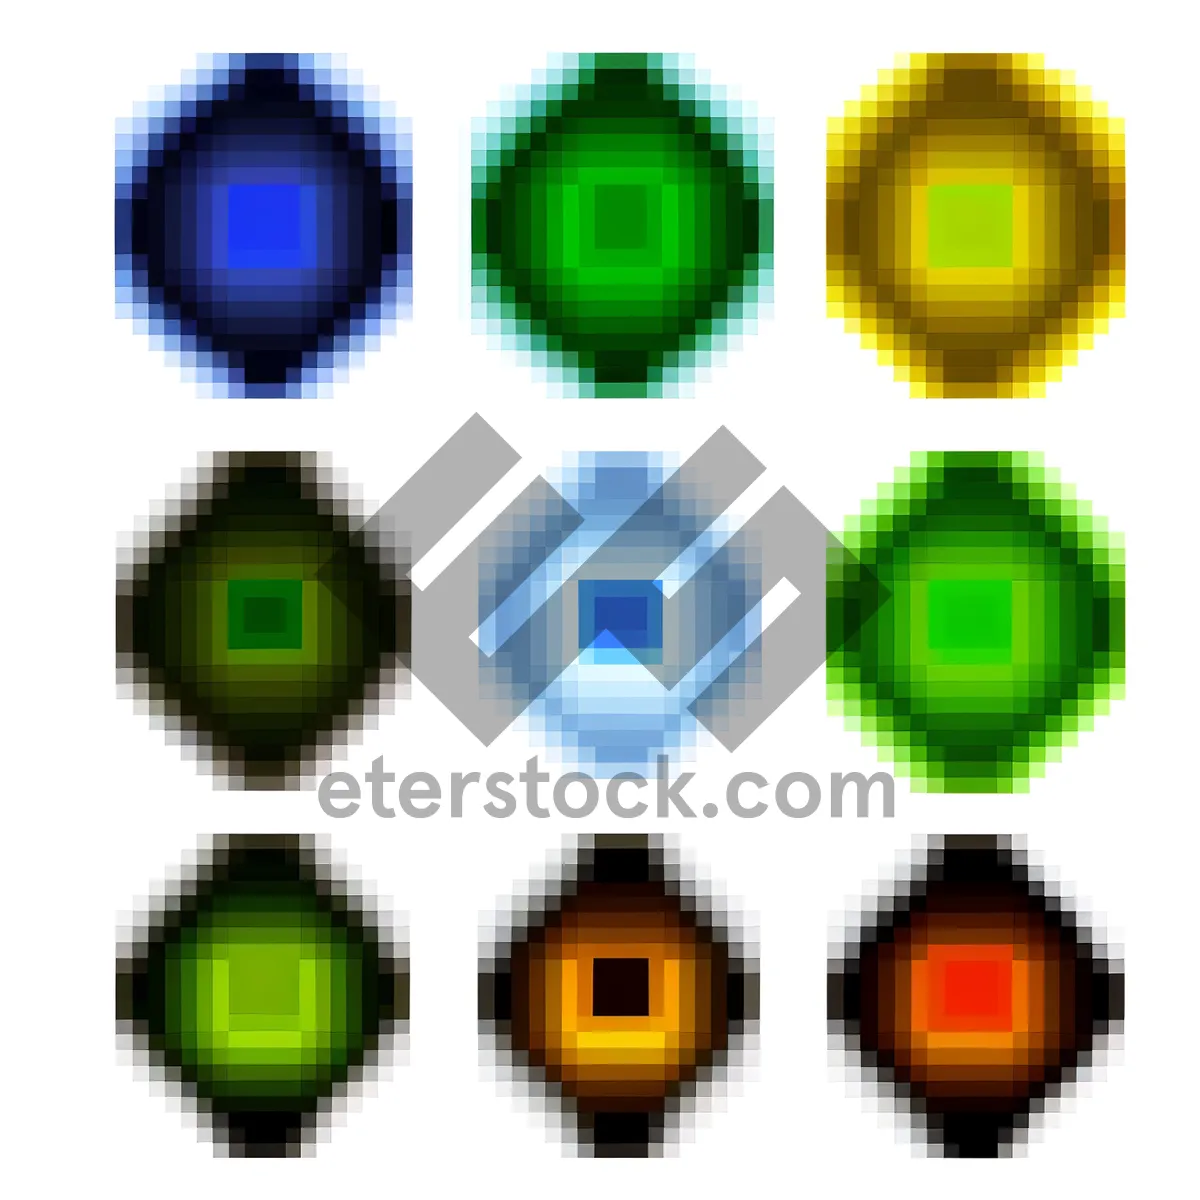 Picture of Glossy Web Button Icon Set: Square Symbols